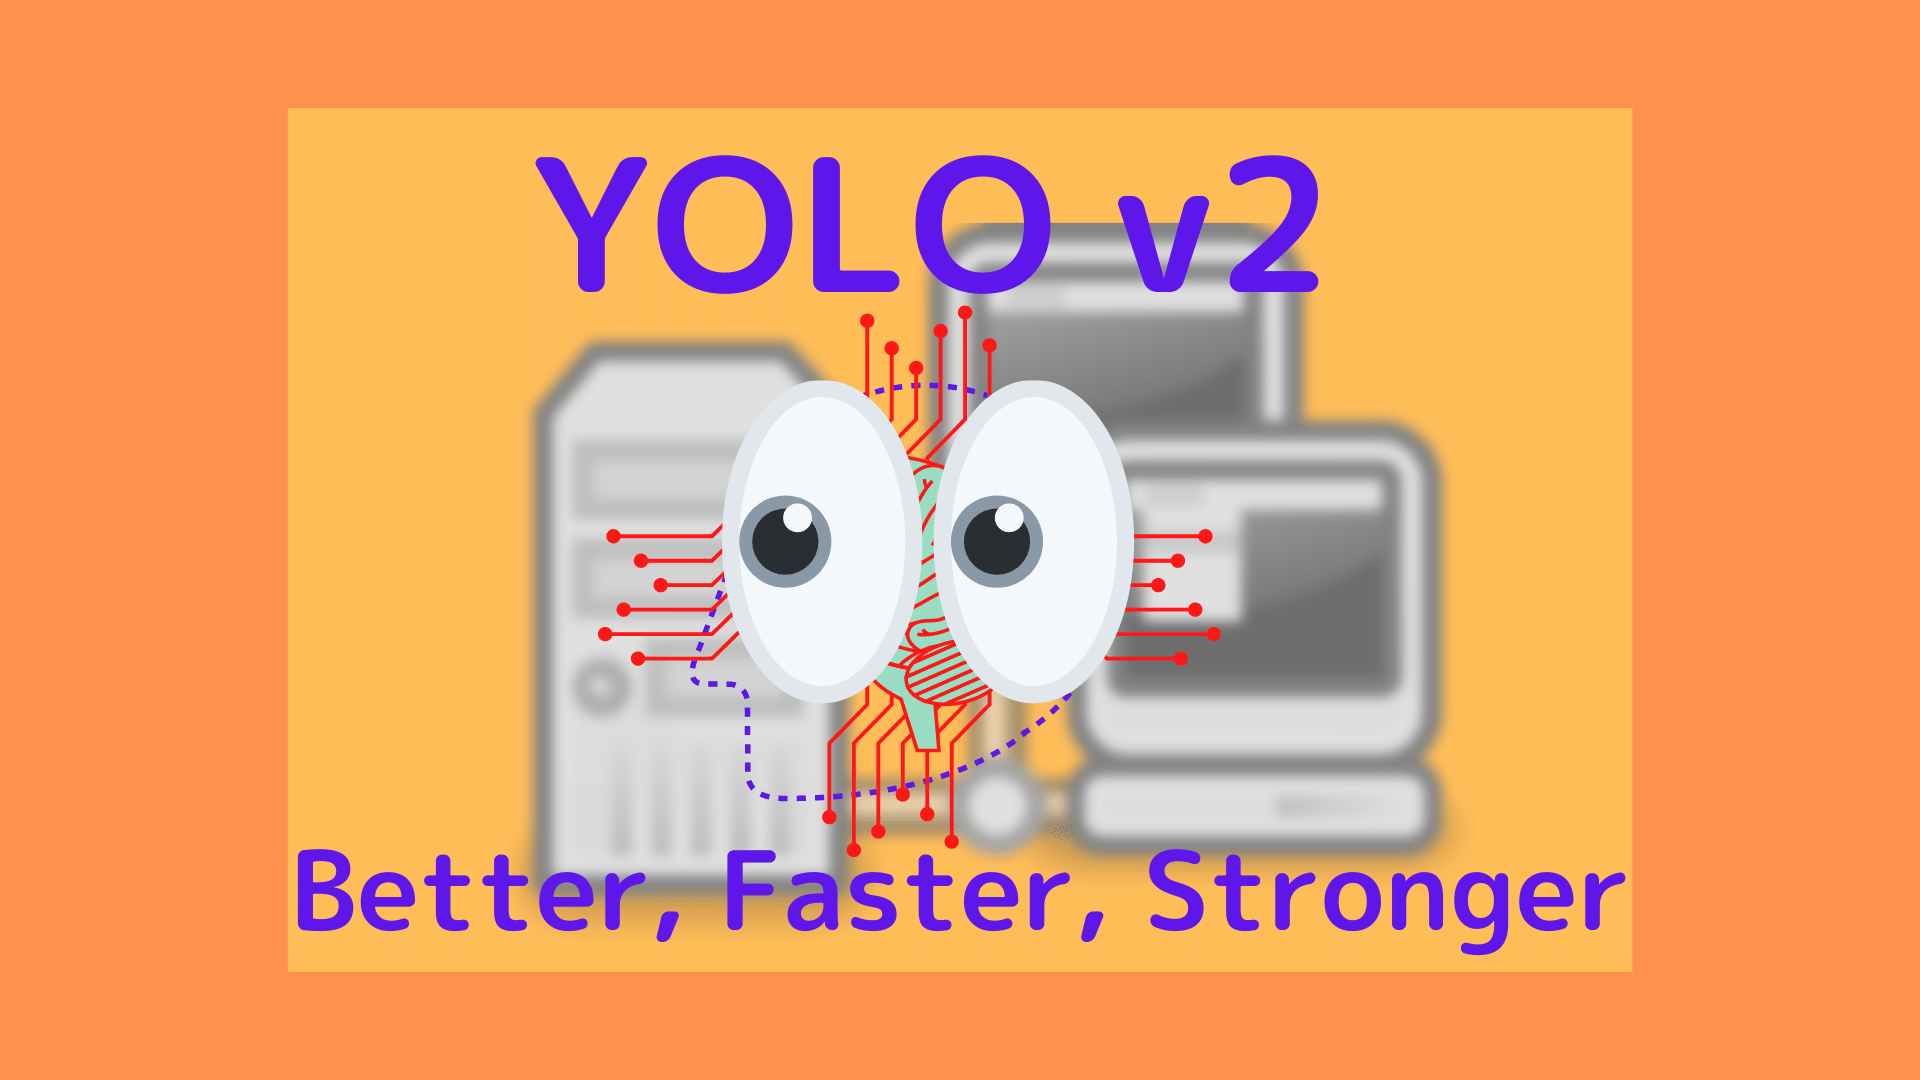 YOLO v2: Better, Faster, Stronger